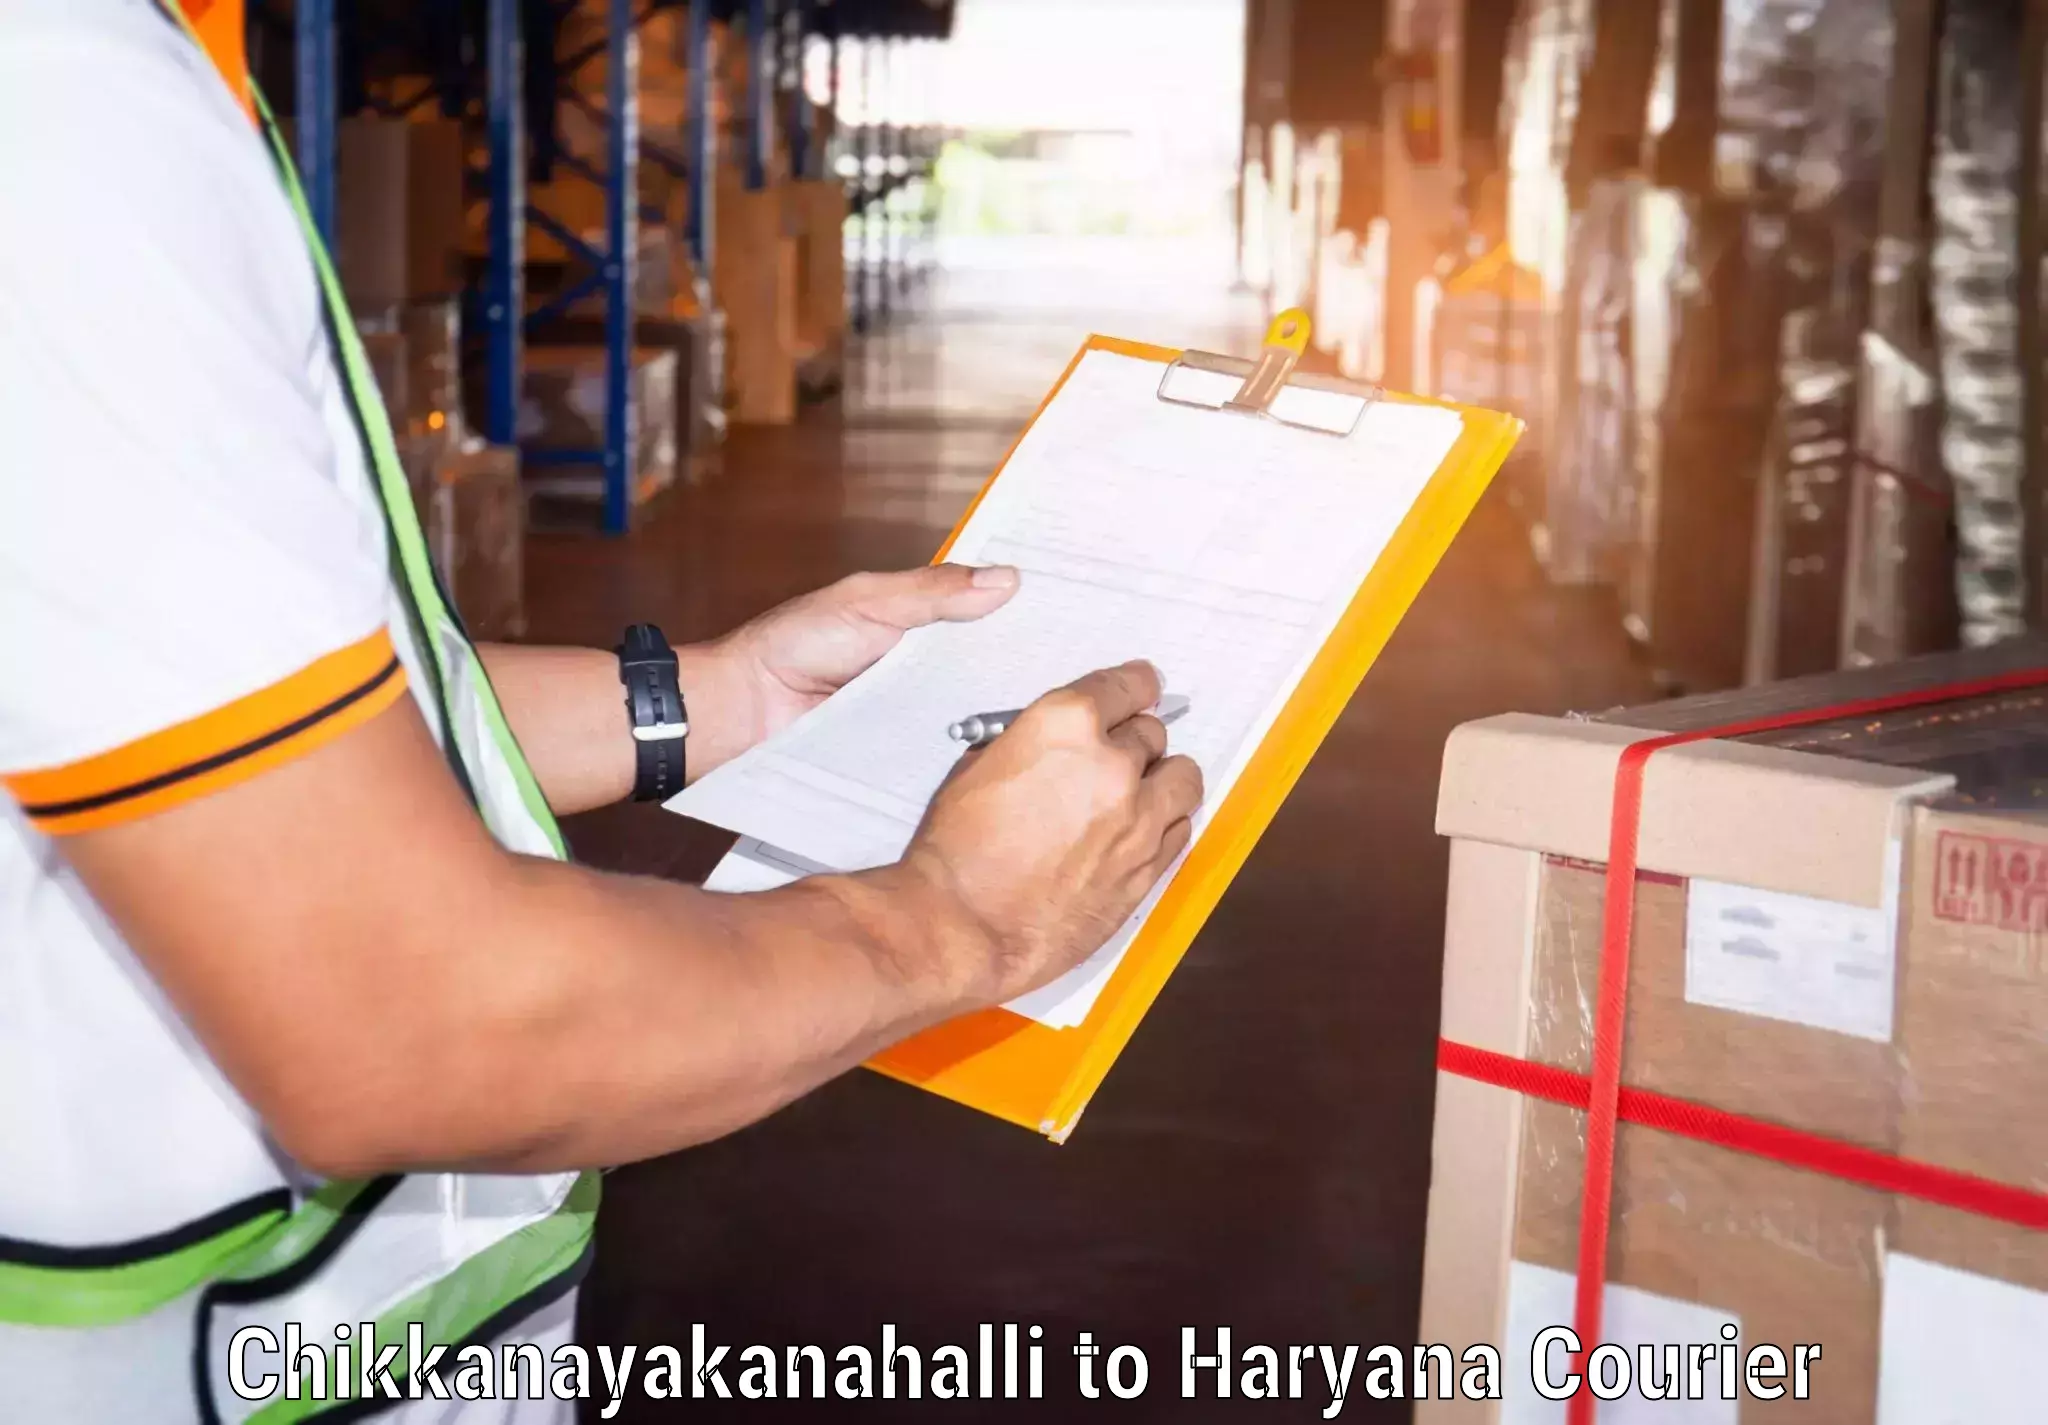 Professional courier handling in Chikkanayakanahalli to Dharuhera